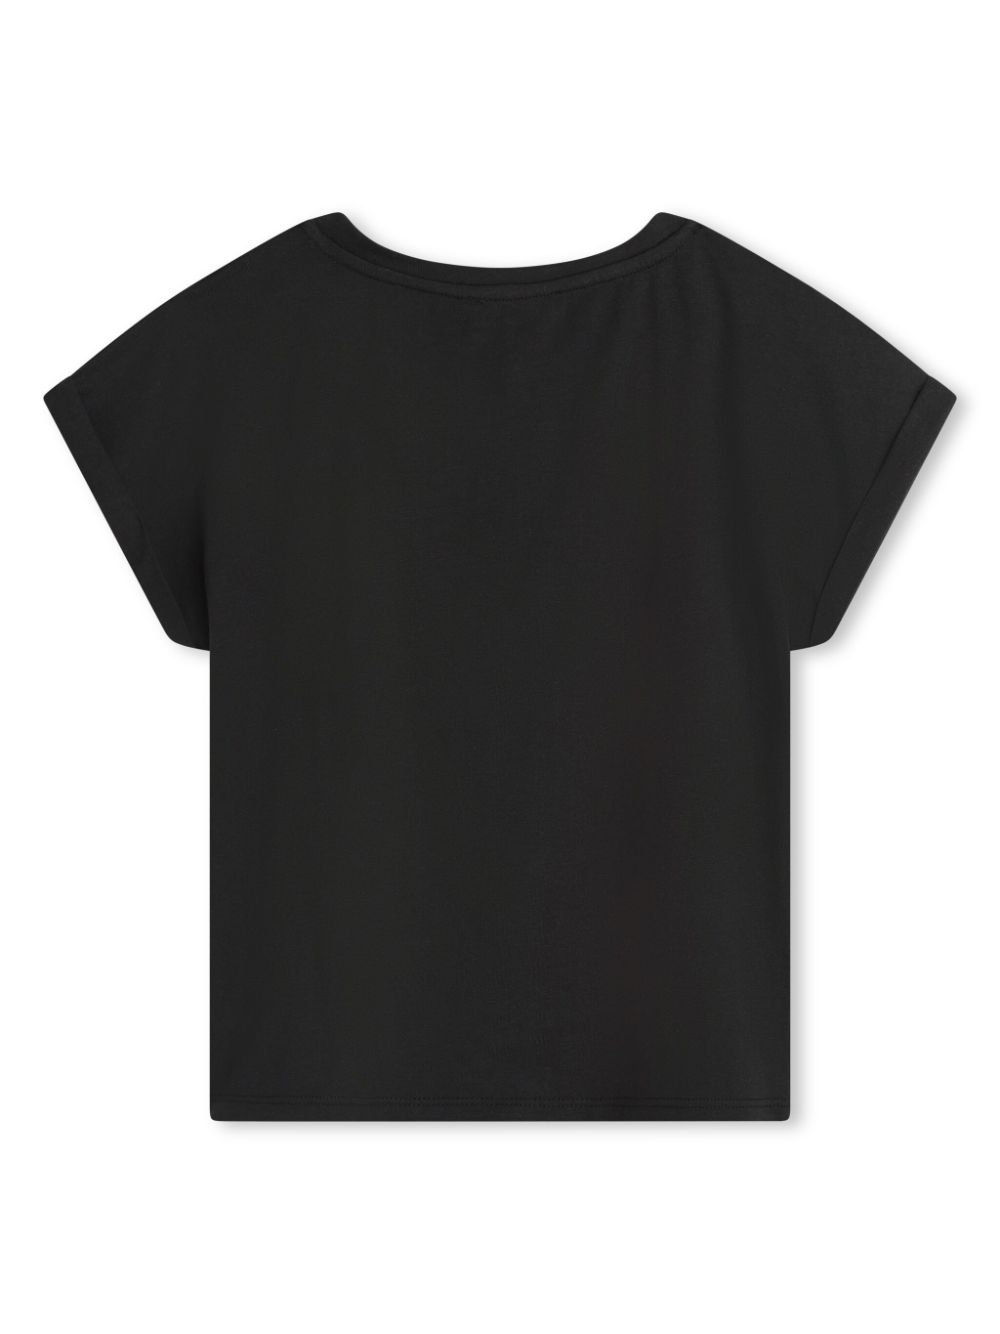 T-shirt nera bambina